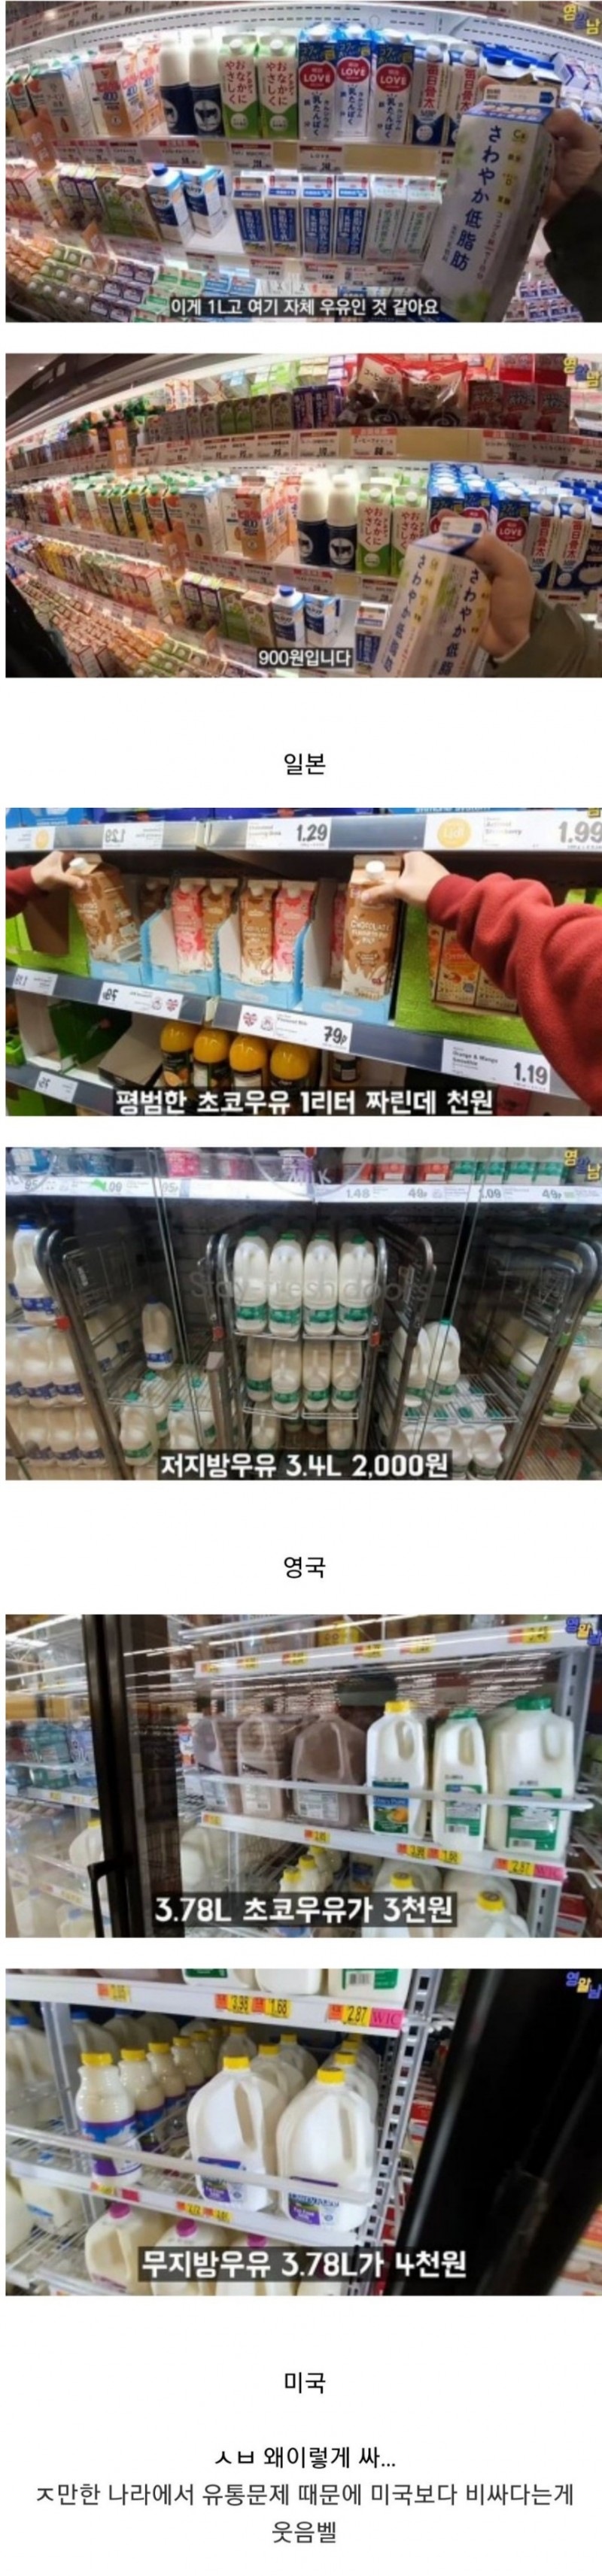 nokbeon.net-해외우유 가격 근황-1번 이미지